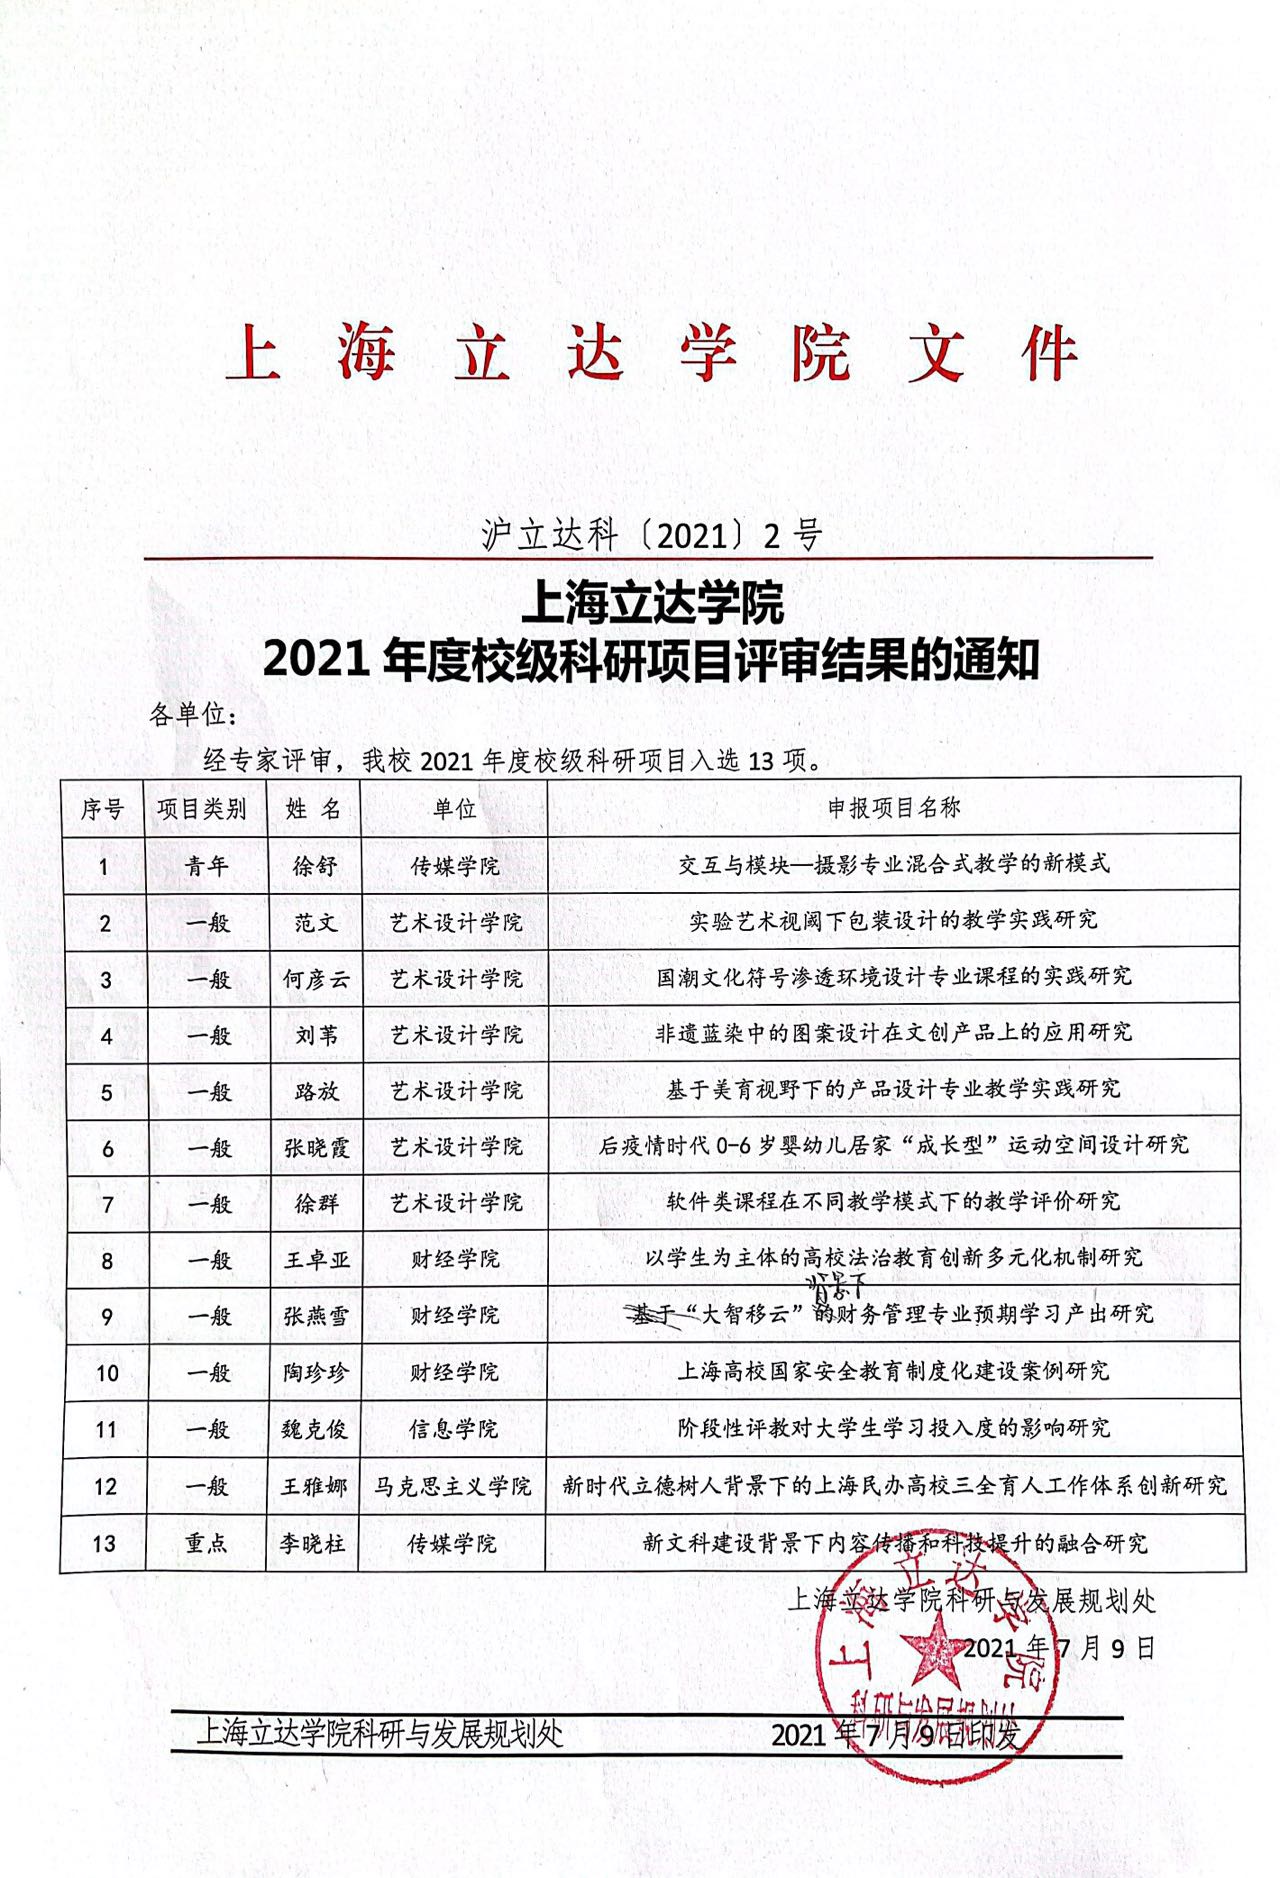 上海立达学院 2021年度校级科研项目评审结果